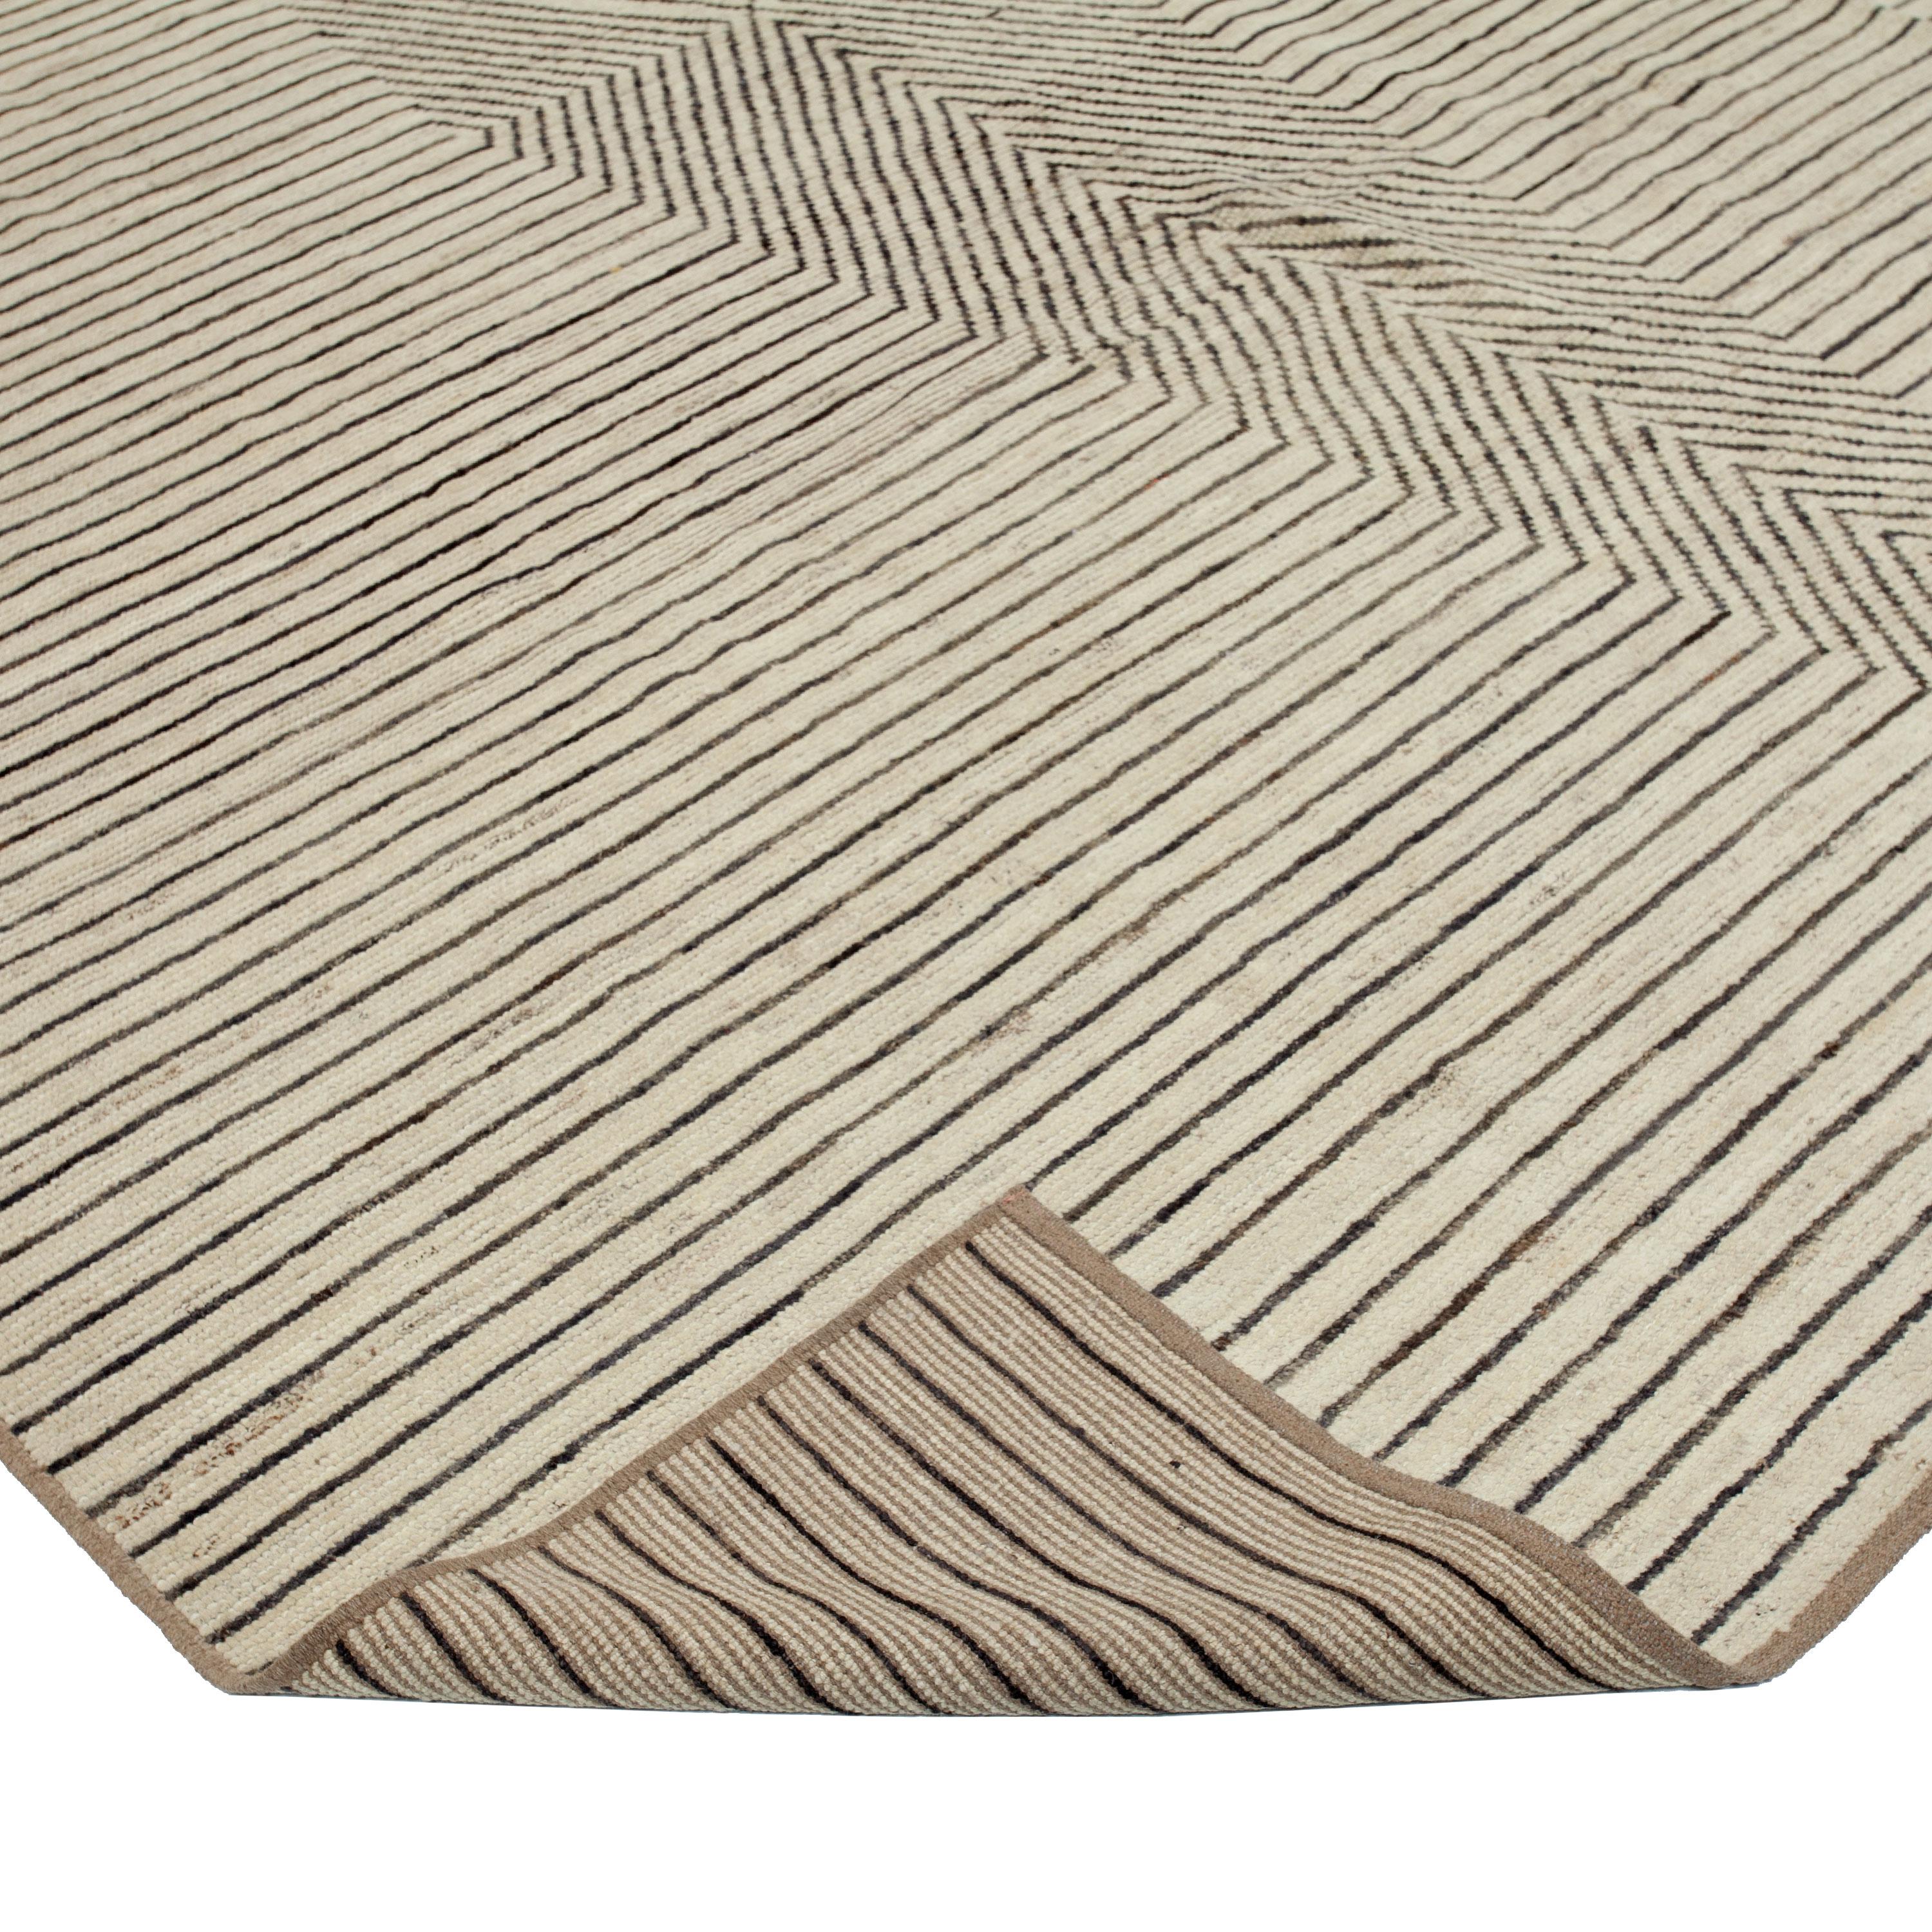 Afghan abc carpet Zameen White and Black Geometric Wool Rug - 9'5